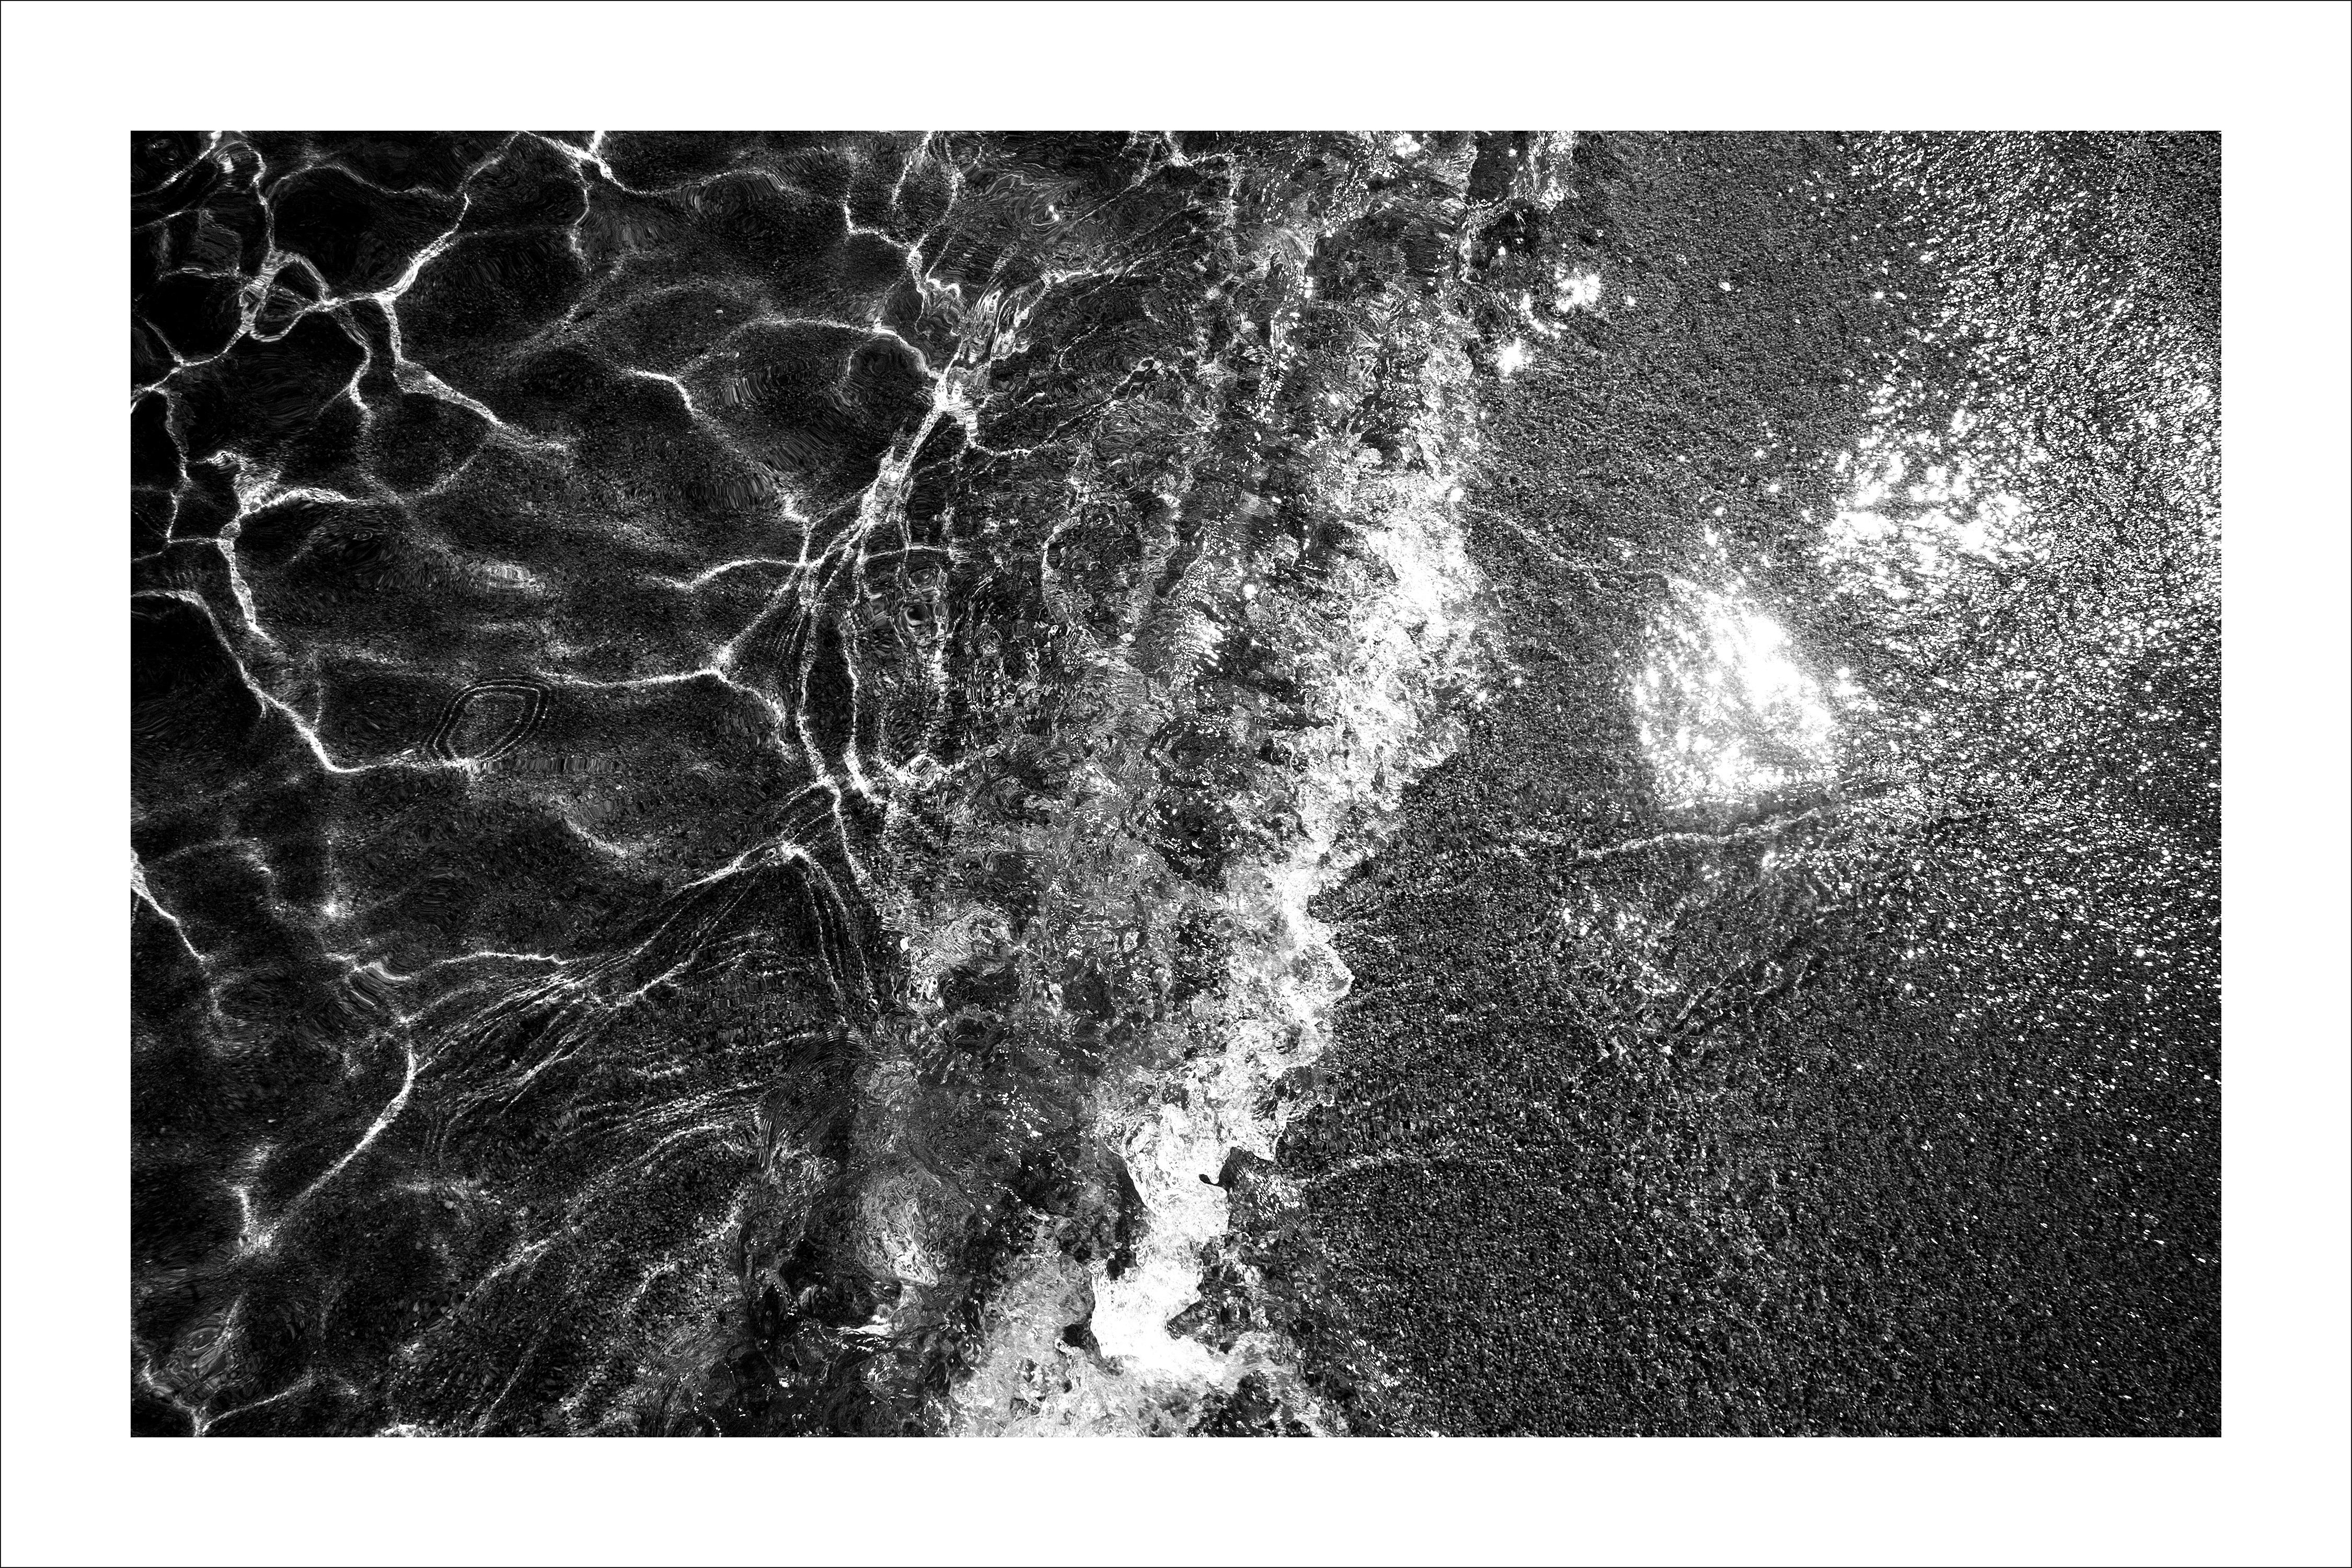 Black and White Photograph Kind of Cyan - Shore de sable des Caraïbes, paysage marin abstrait noir et blanc, vagues ondulantes, édition limitée 